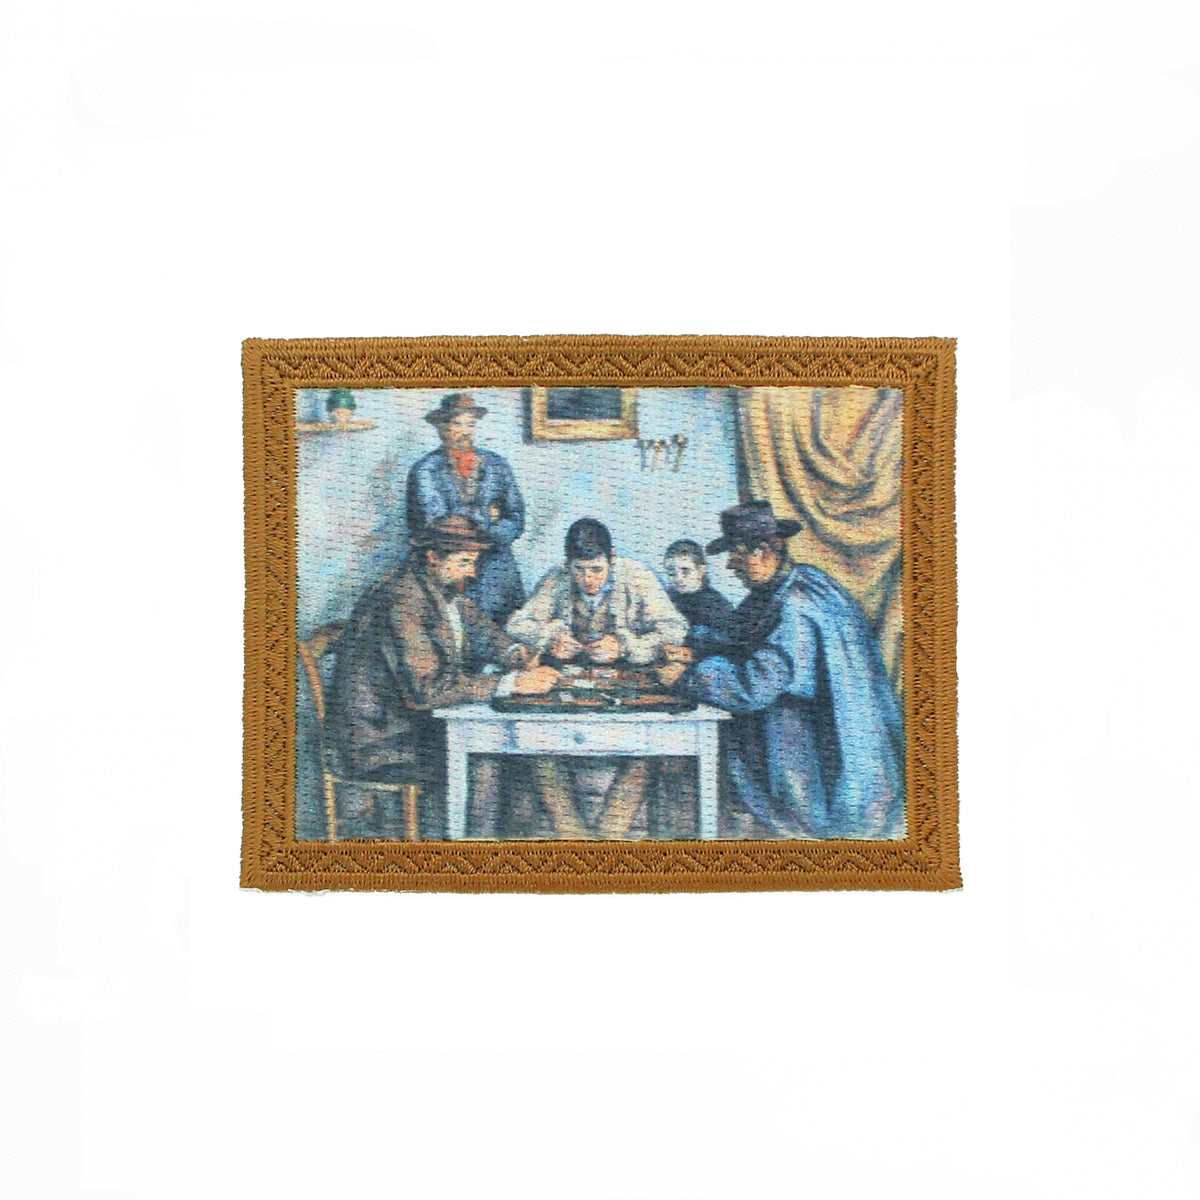 Cézanne &quot;Card Players&quot; artwork patch